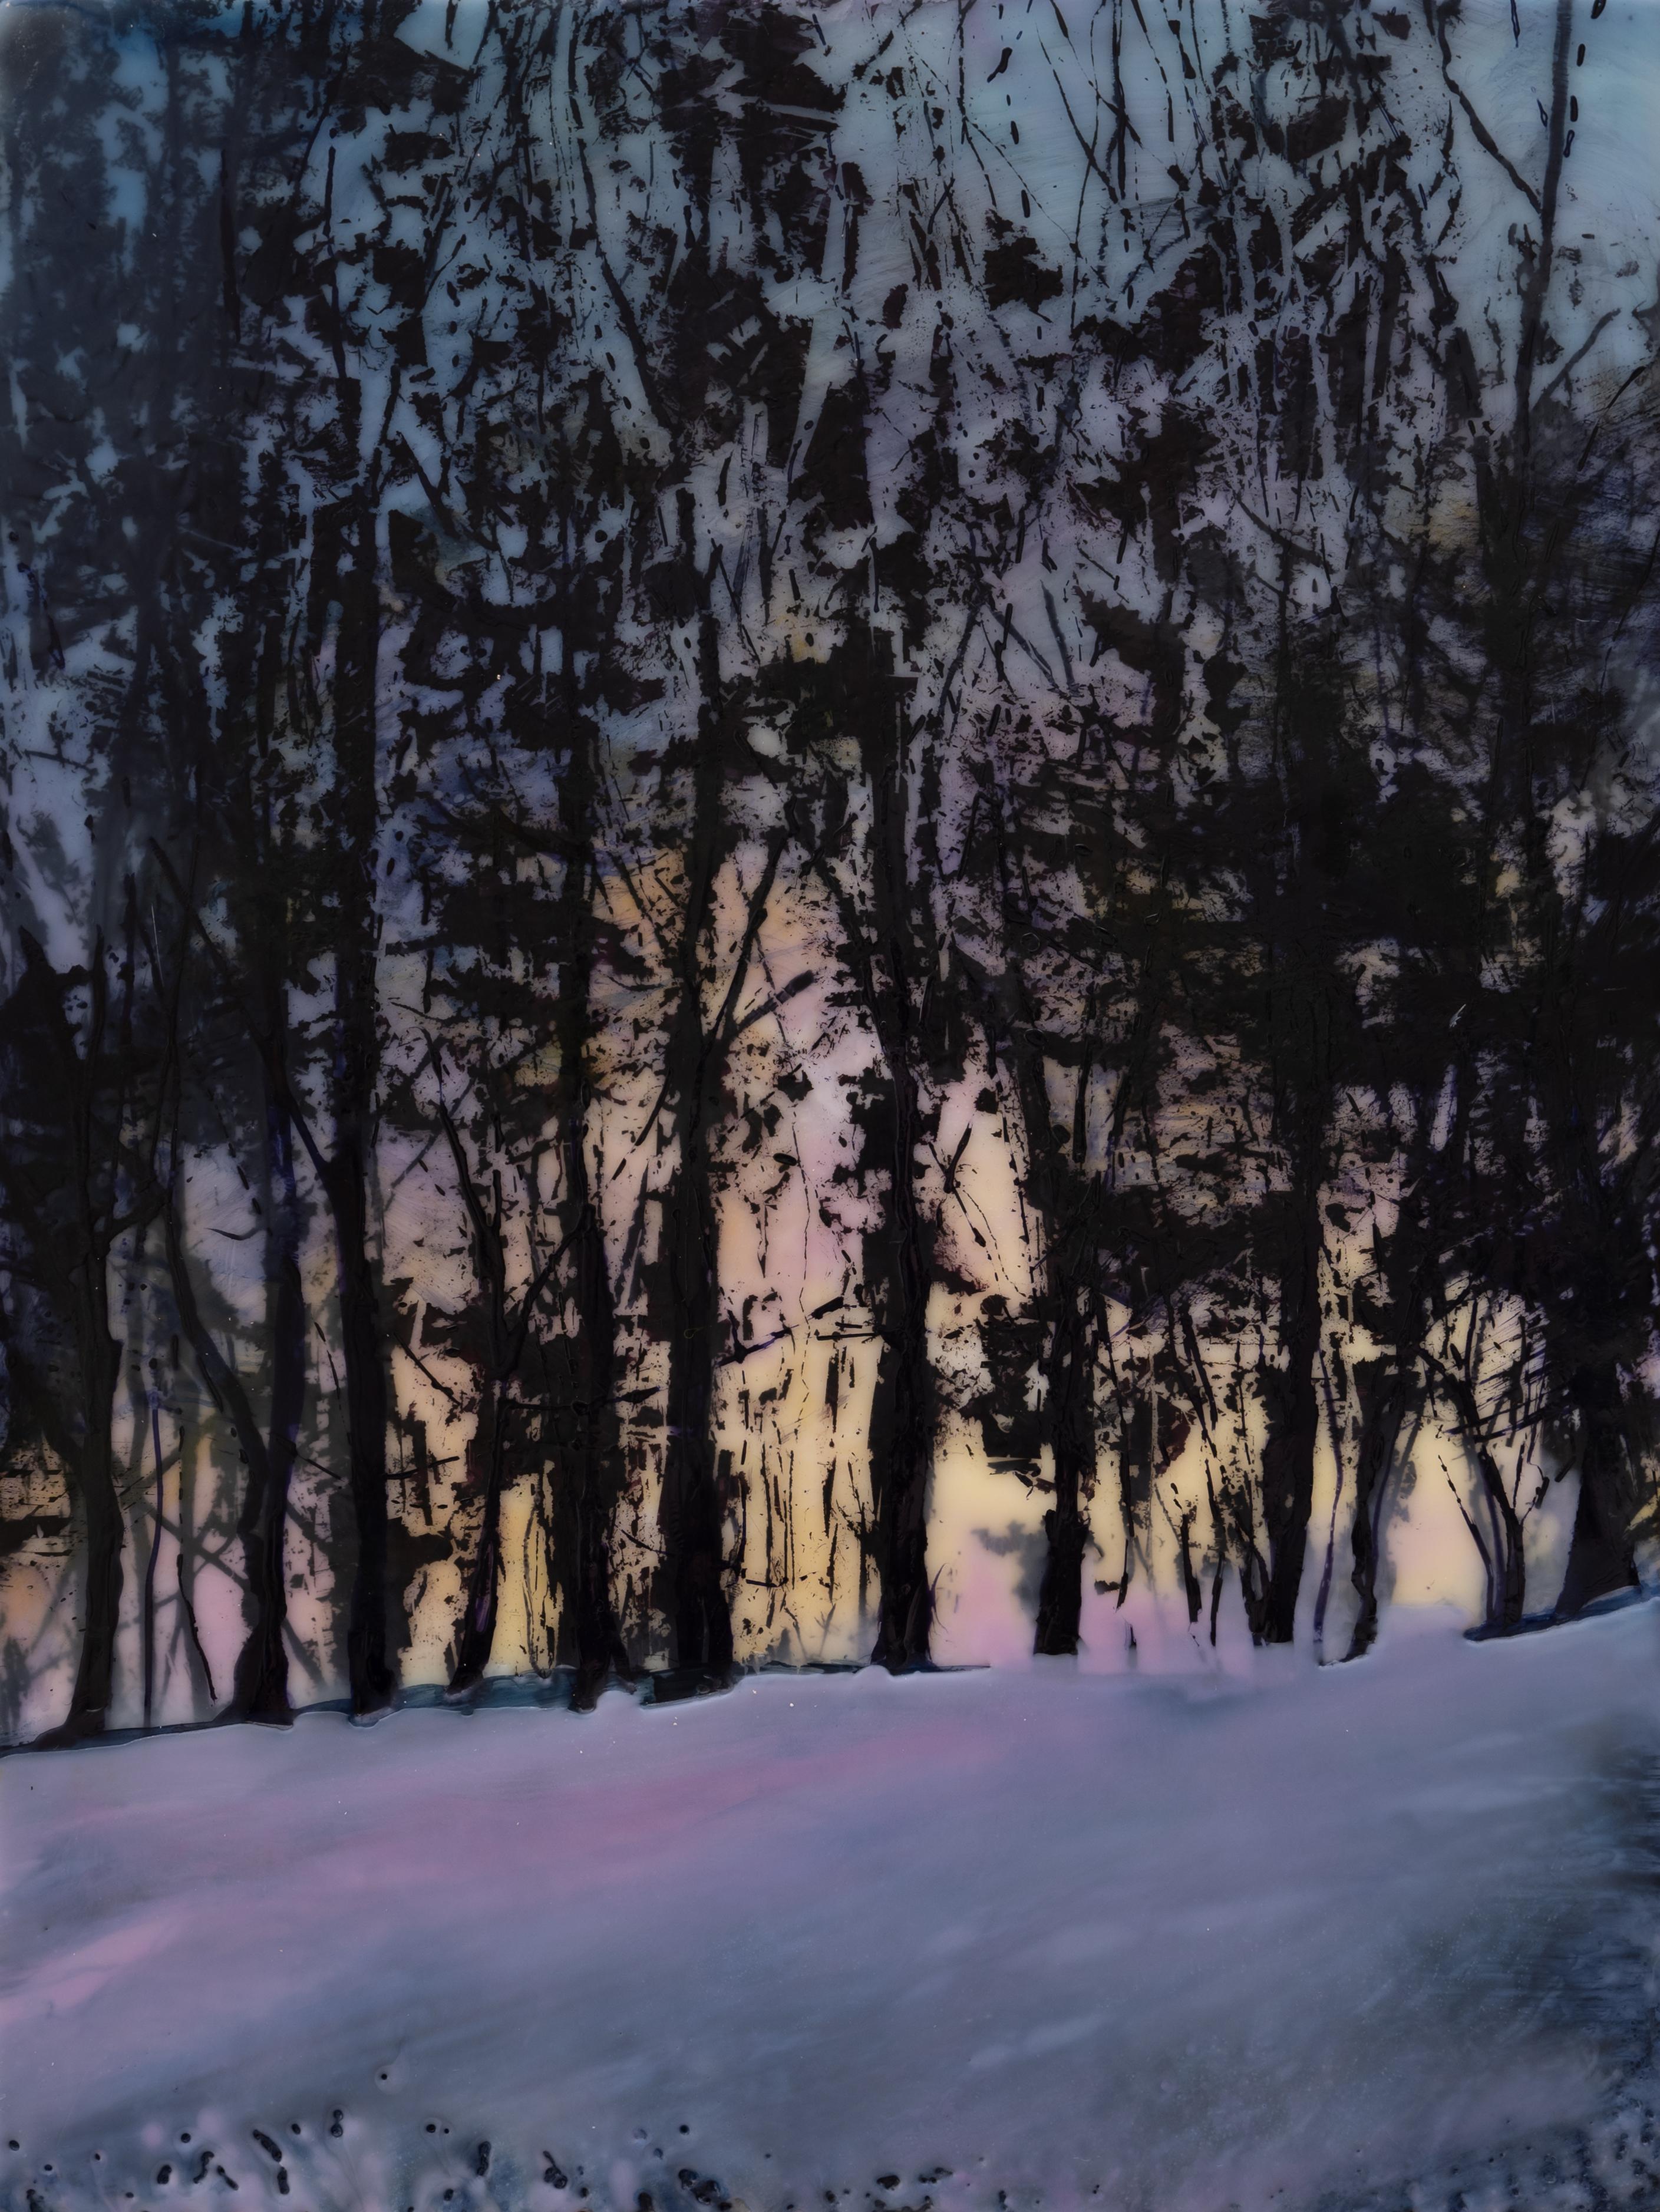 Neige de printemps (peinture contemporaine à l'encaustique d'un coucher de soleil derrière une ligne d'arbres sombre) - Mixed Media Art de Regina Quinn 